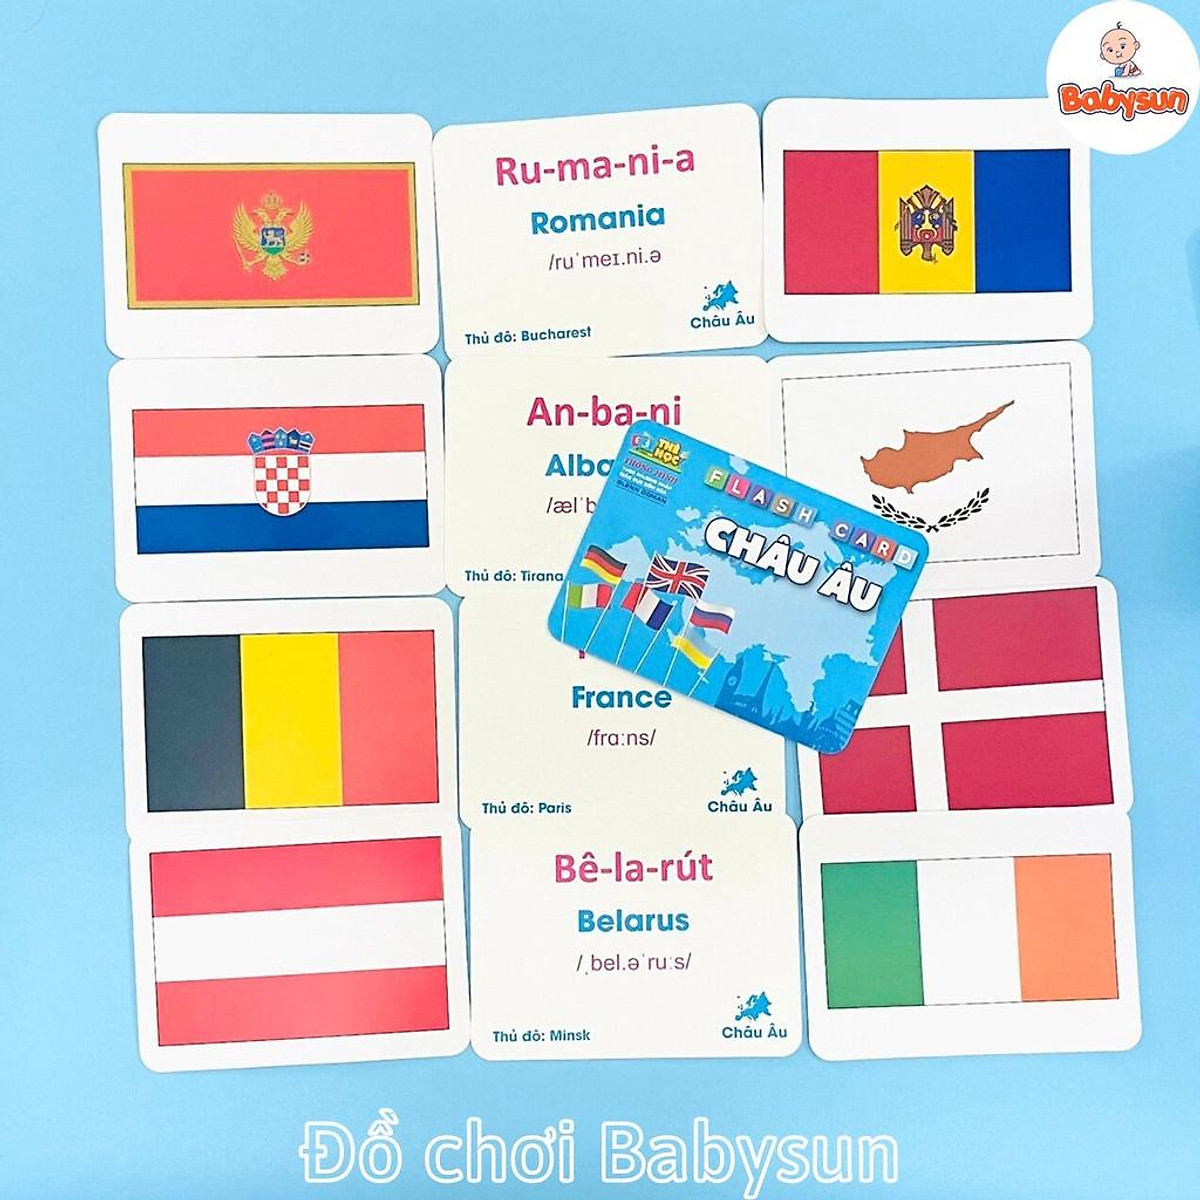 Bộ thẻ flashcard cờ các nước trên thế giới học thông minh cho bé ...